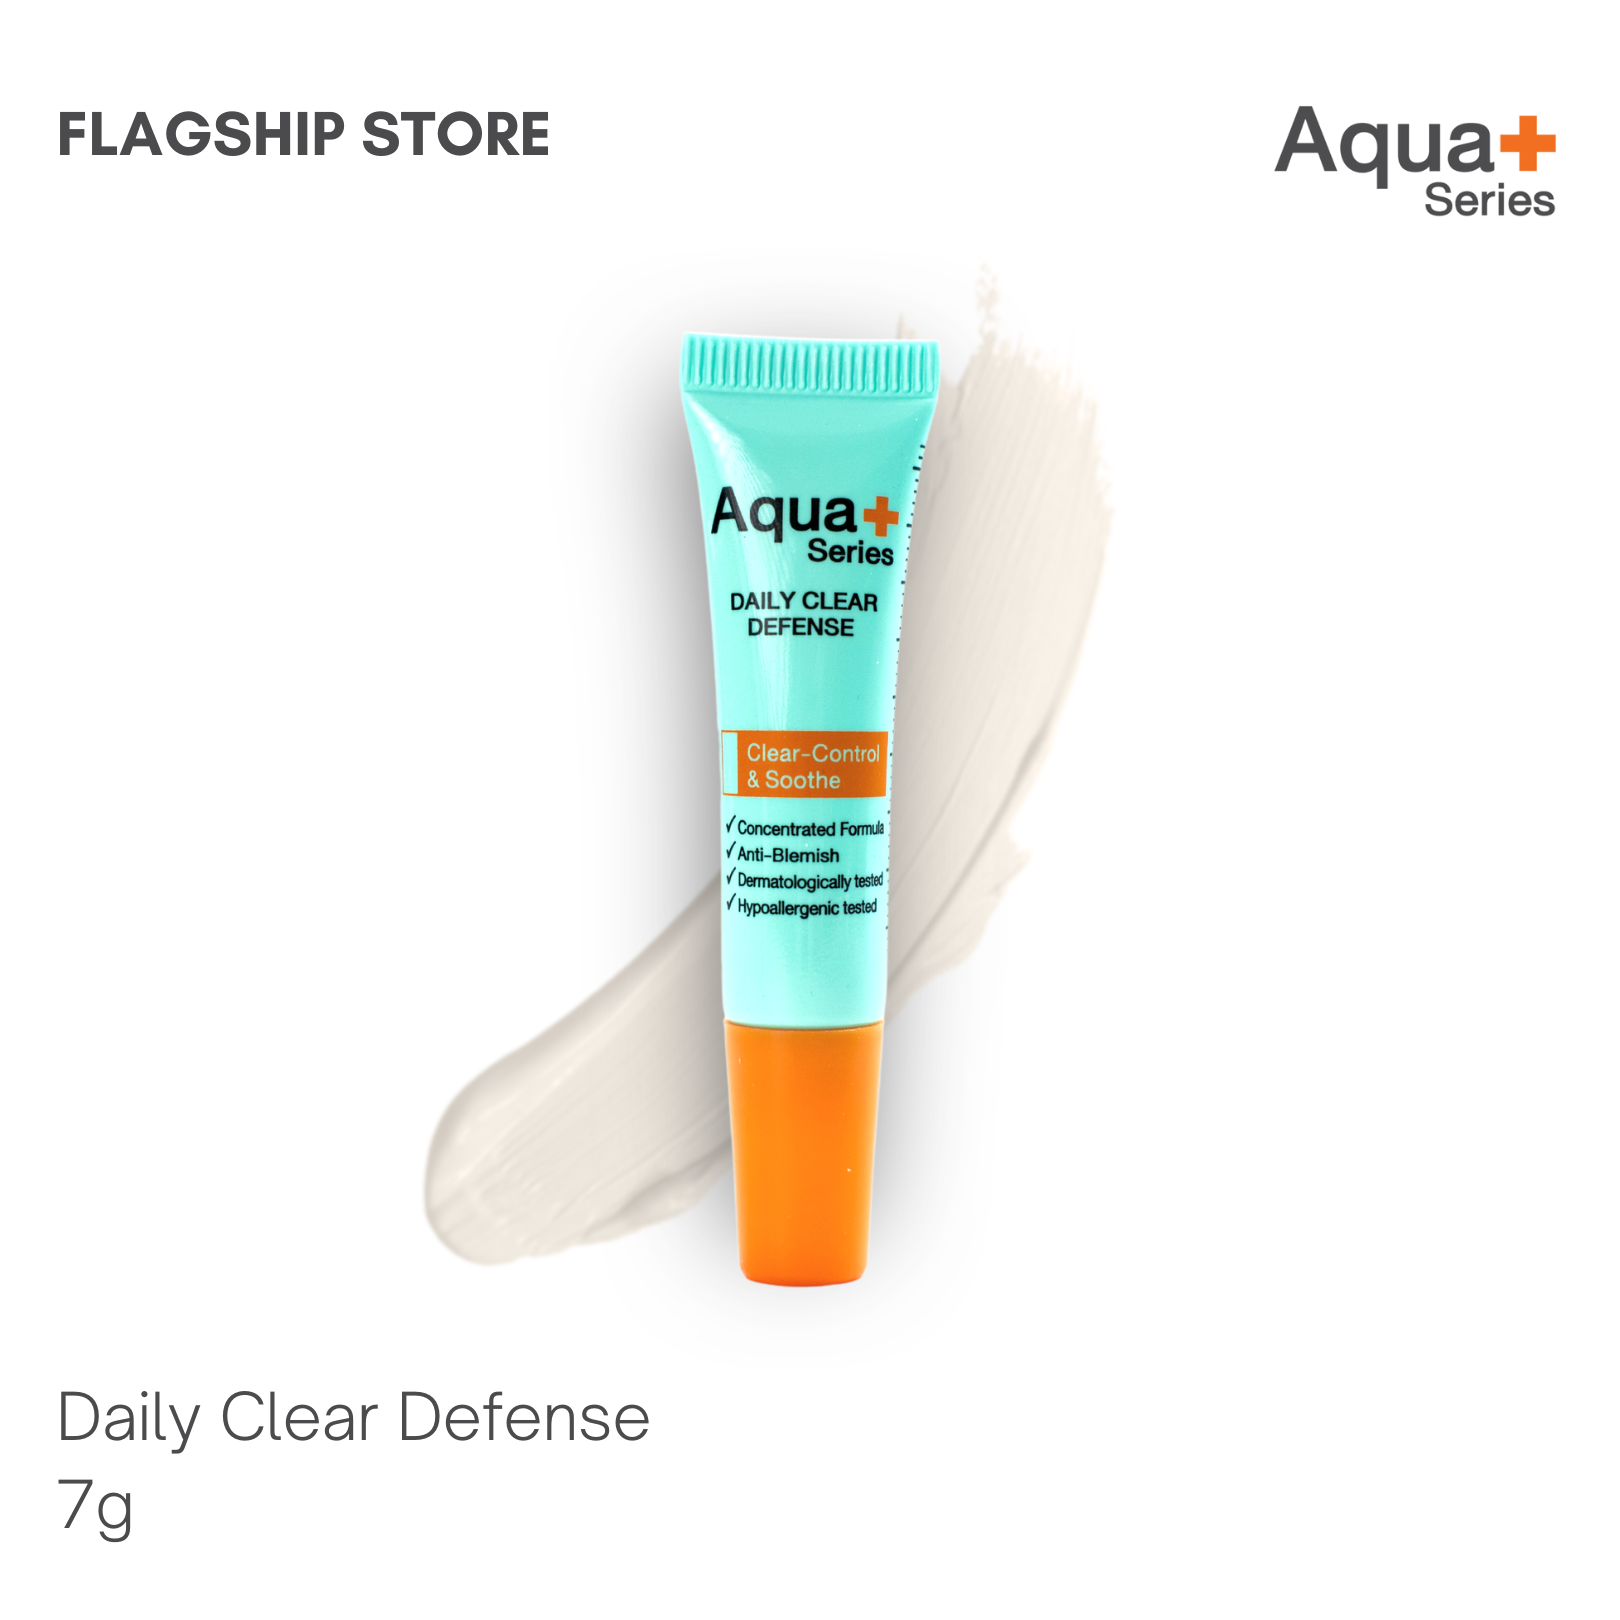 Aqua+ Series Daily Clear Defense 7g.